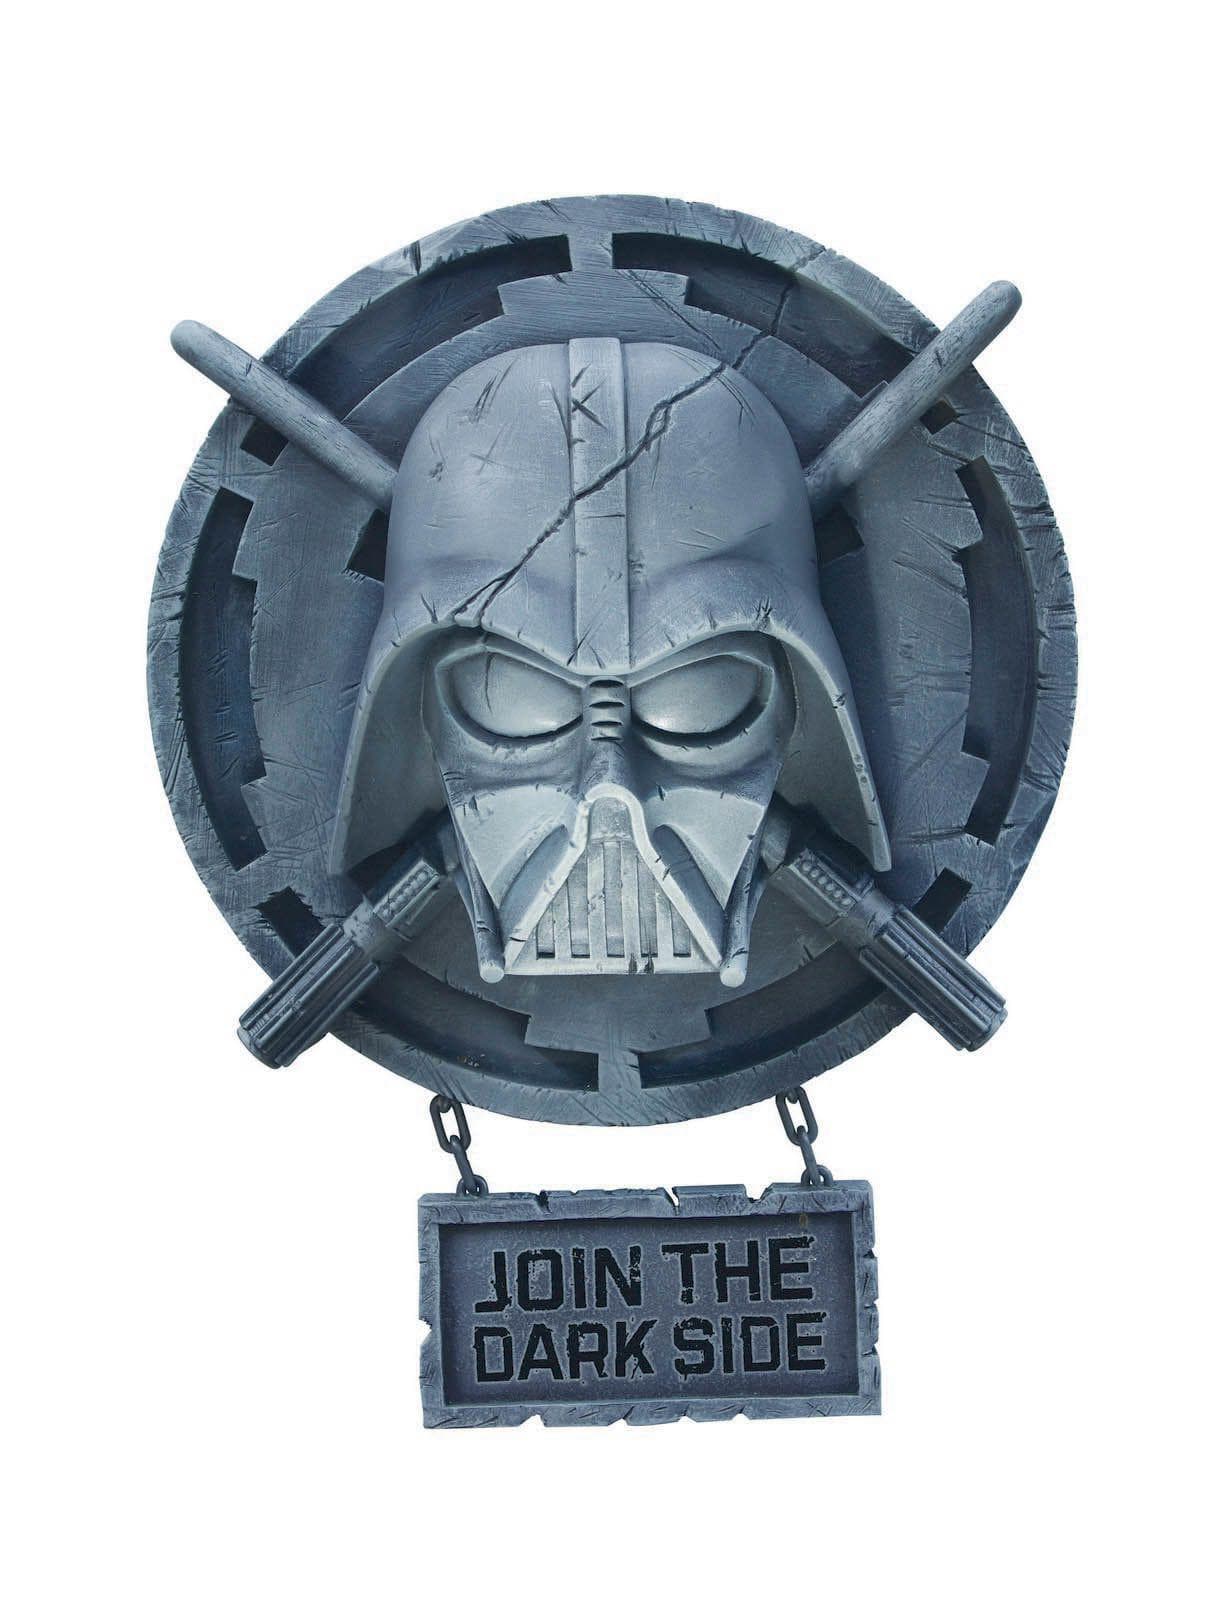 Star Wars Darth Vader Dark Side Wall Decoration - costumes.com